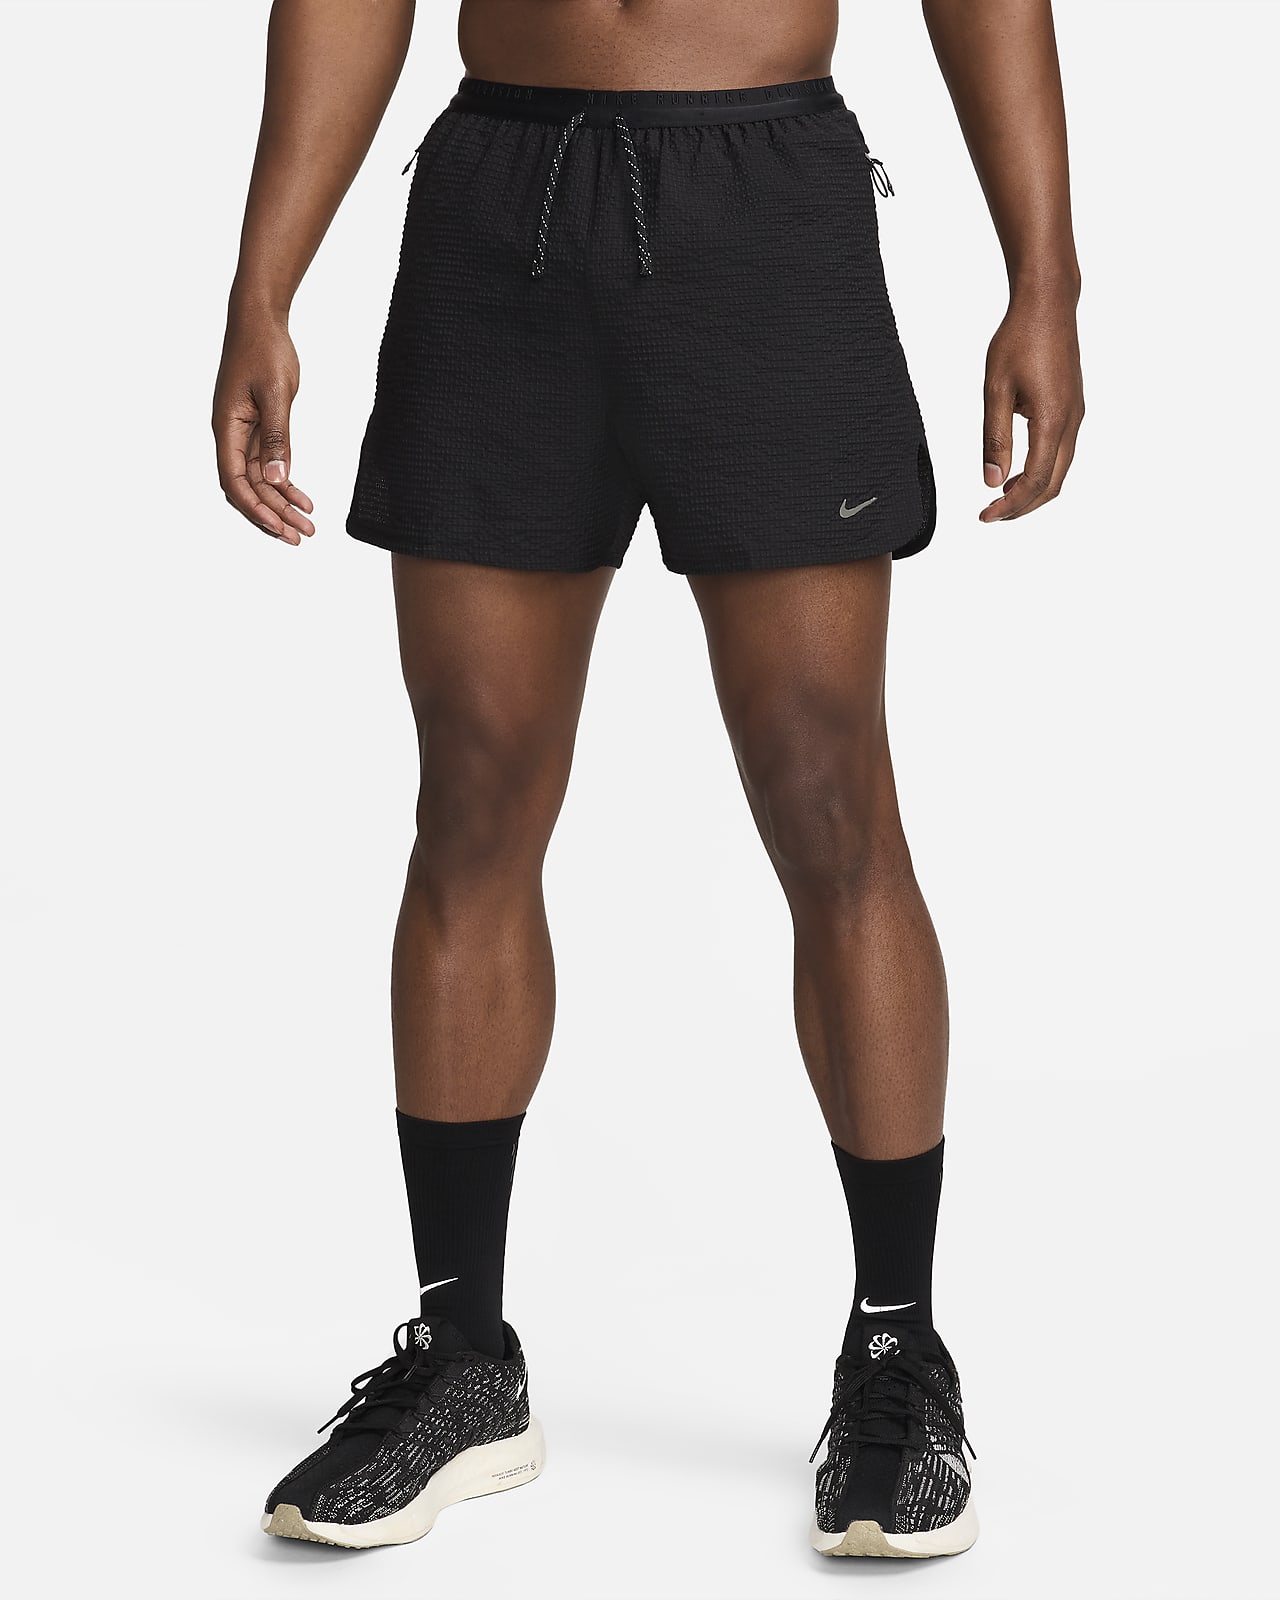 Ανδρικό σορτς για τρέξιμο Dri-FIT ADV με επένδυση εσωτερικού σορτς Nike Running Division 10 cm